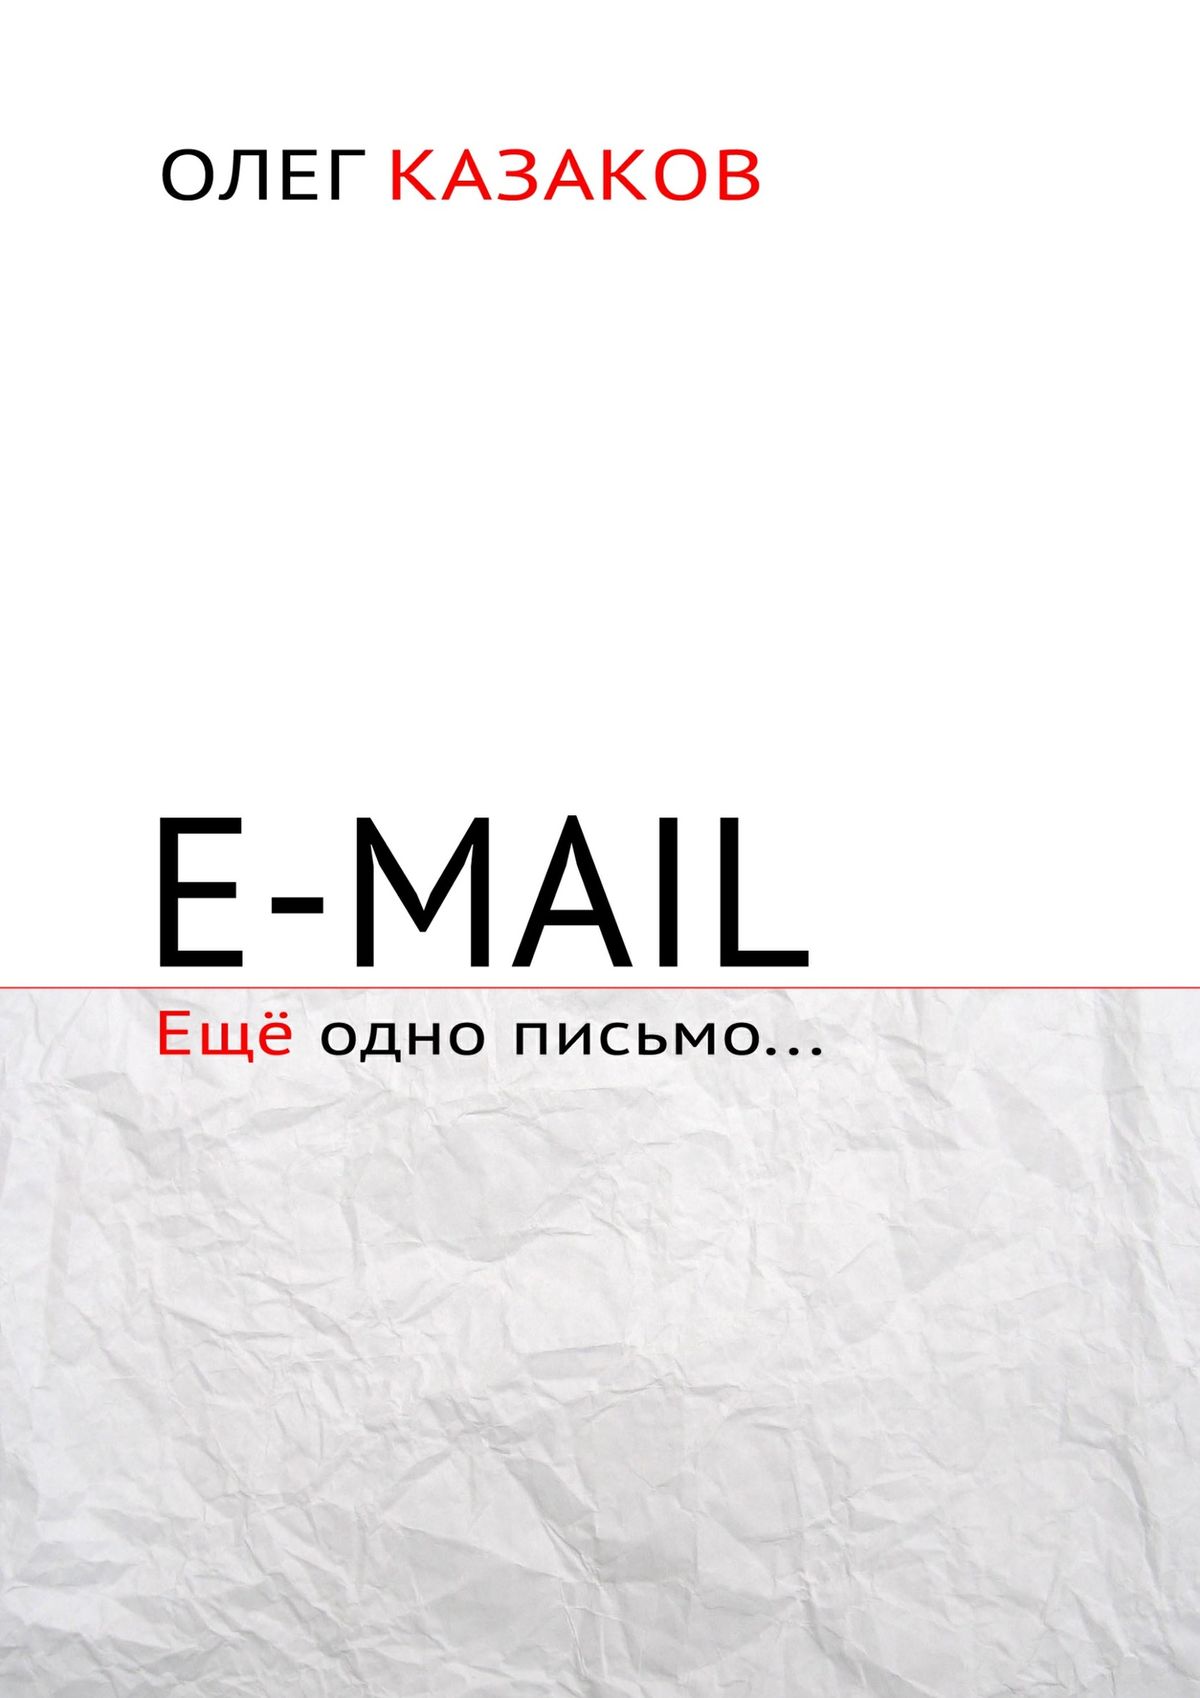 E-mail.Ещё одно письмо…